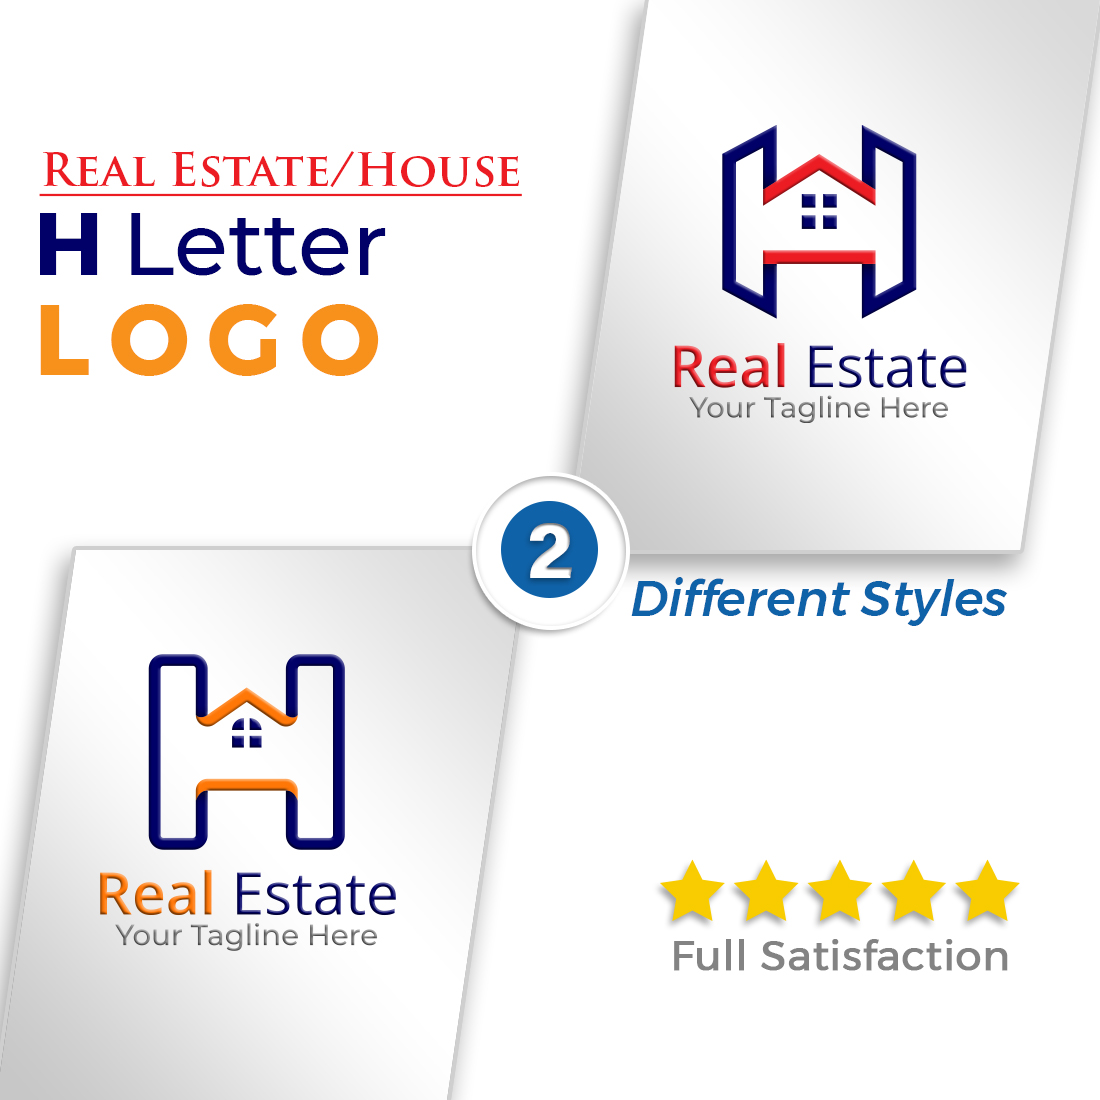 H Letter Property Rent Service Logo Design cover image.